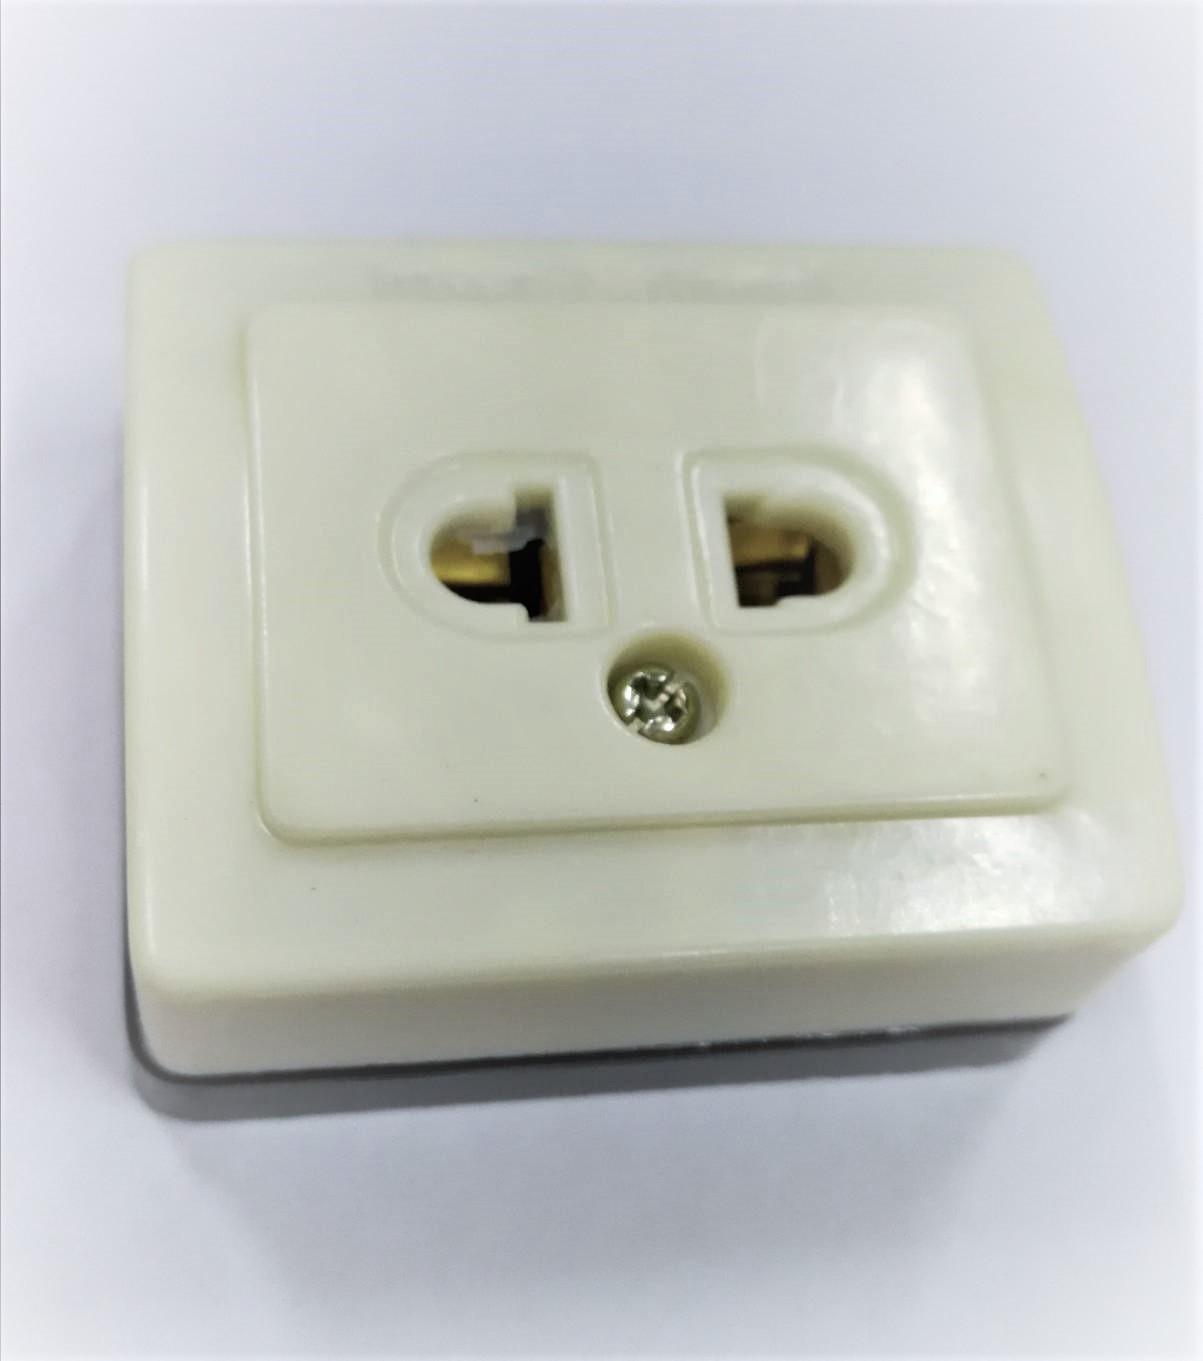 ปลั๊กลอยสี่เหลี่ยม WK1091 (เต้ารับ ติดลอย สี่เหลี่ยม) International Plug